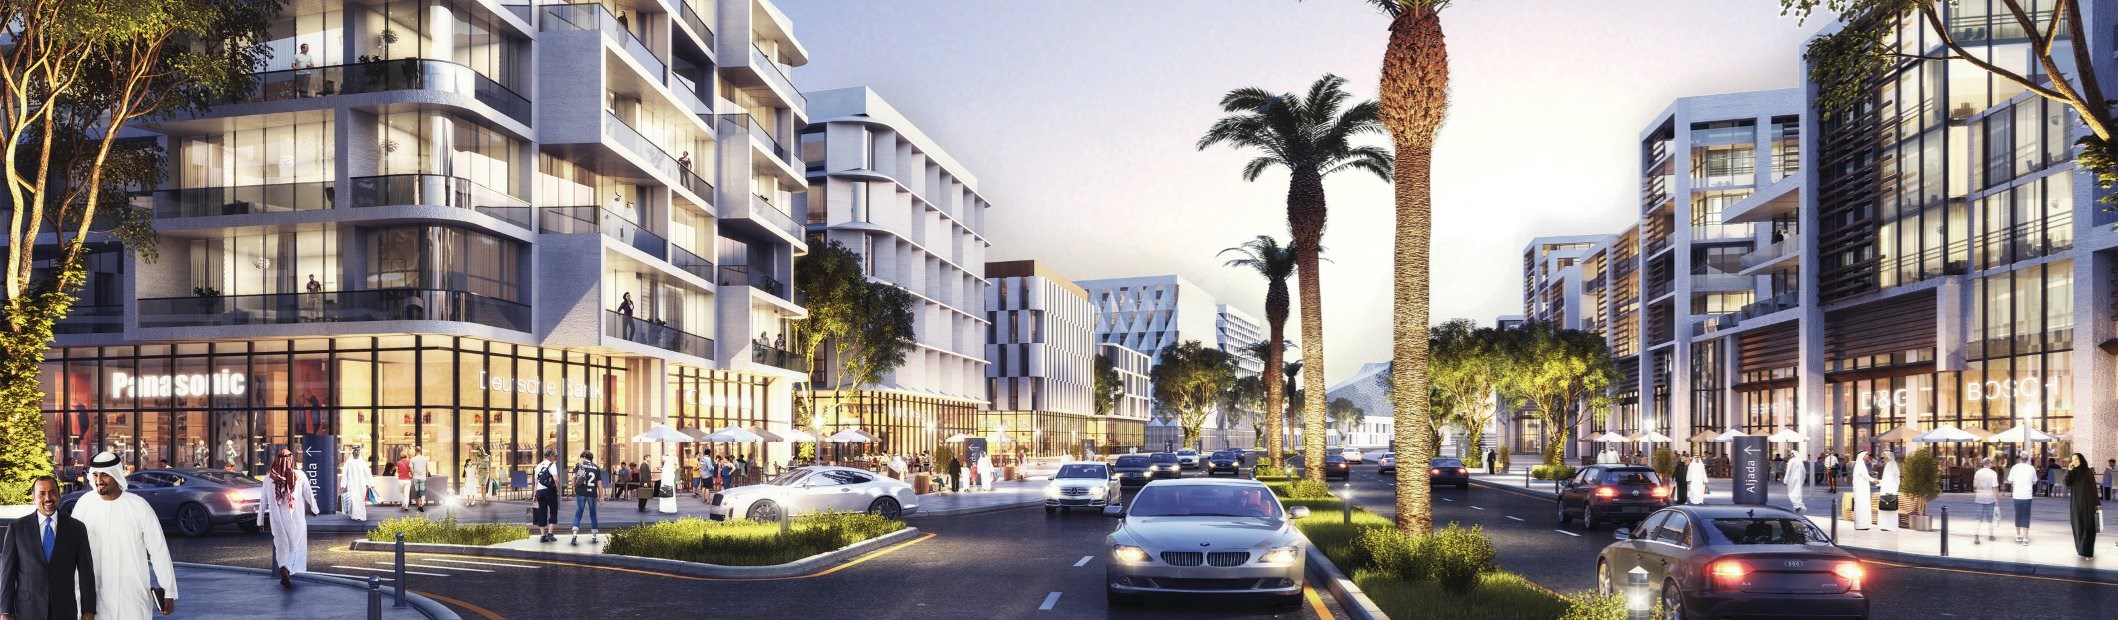 Reuters: UAE property developer secures 1 bln dirham loan for mega-project